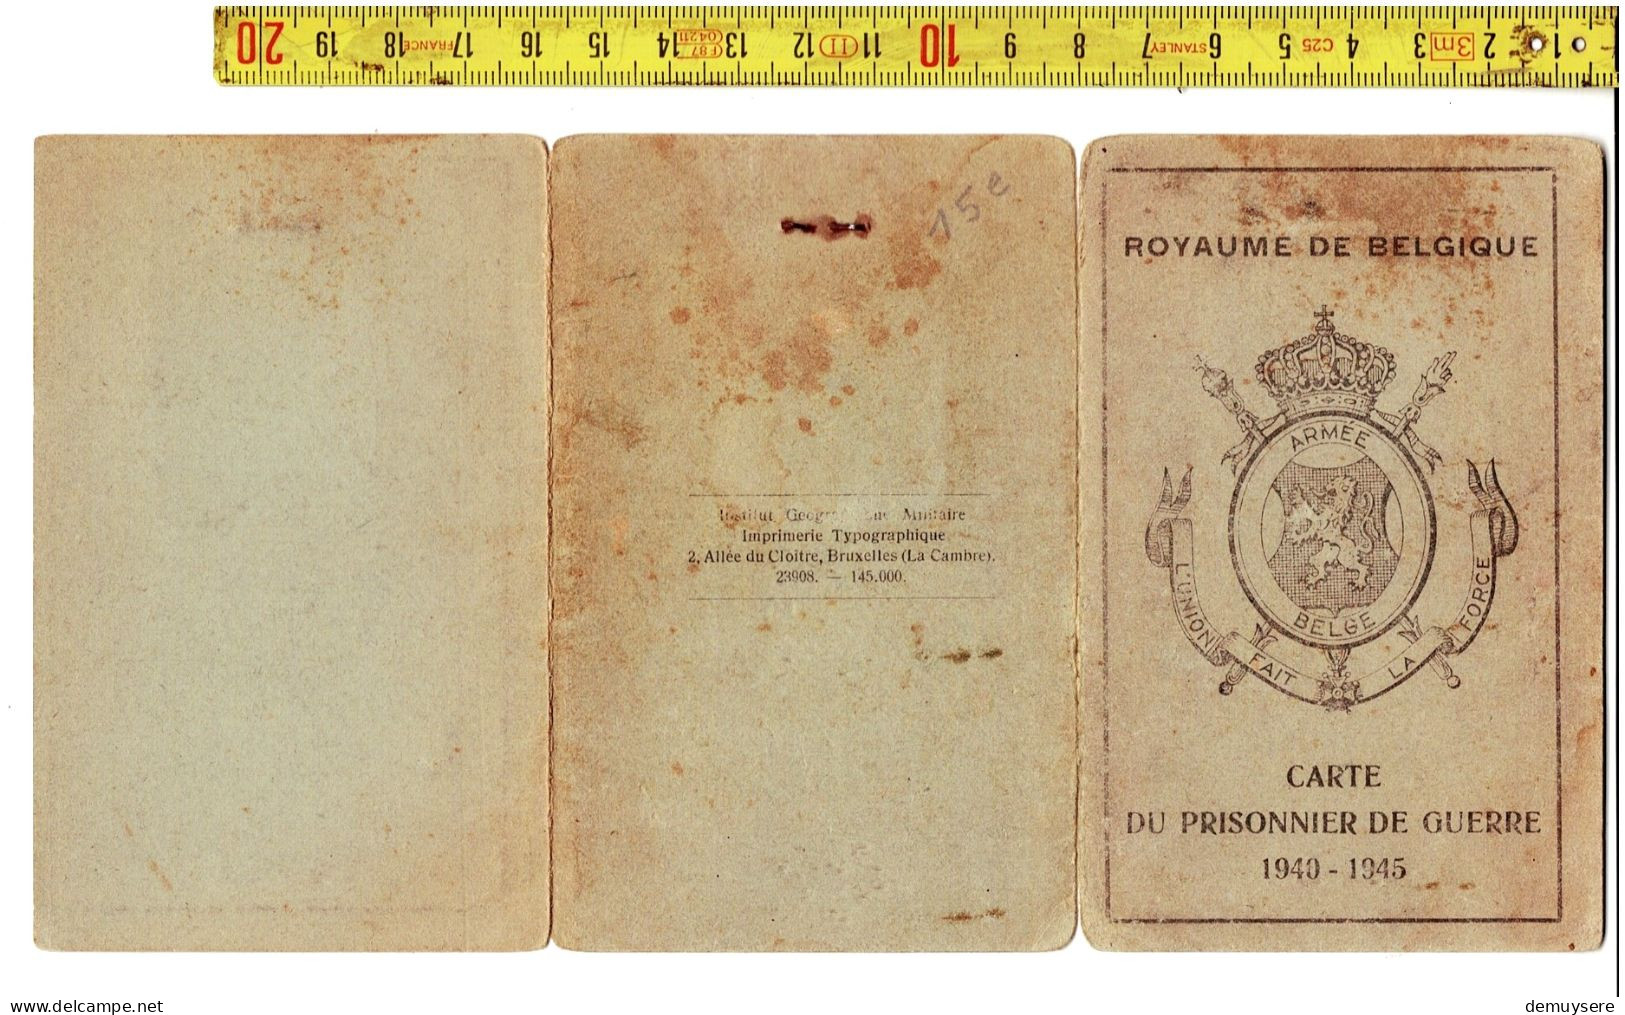 KL 5300 - ROYAUME DE BELGIQUE - CARTE DU PRISONNIER DE GUERRE 1940-1945 - BRUYNEEL GUSTAVE - PITTHEM - Documenten